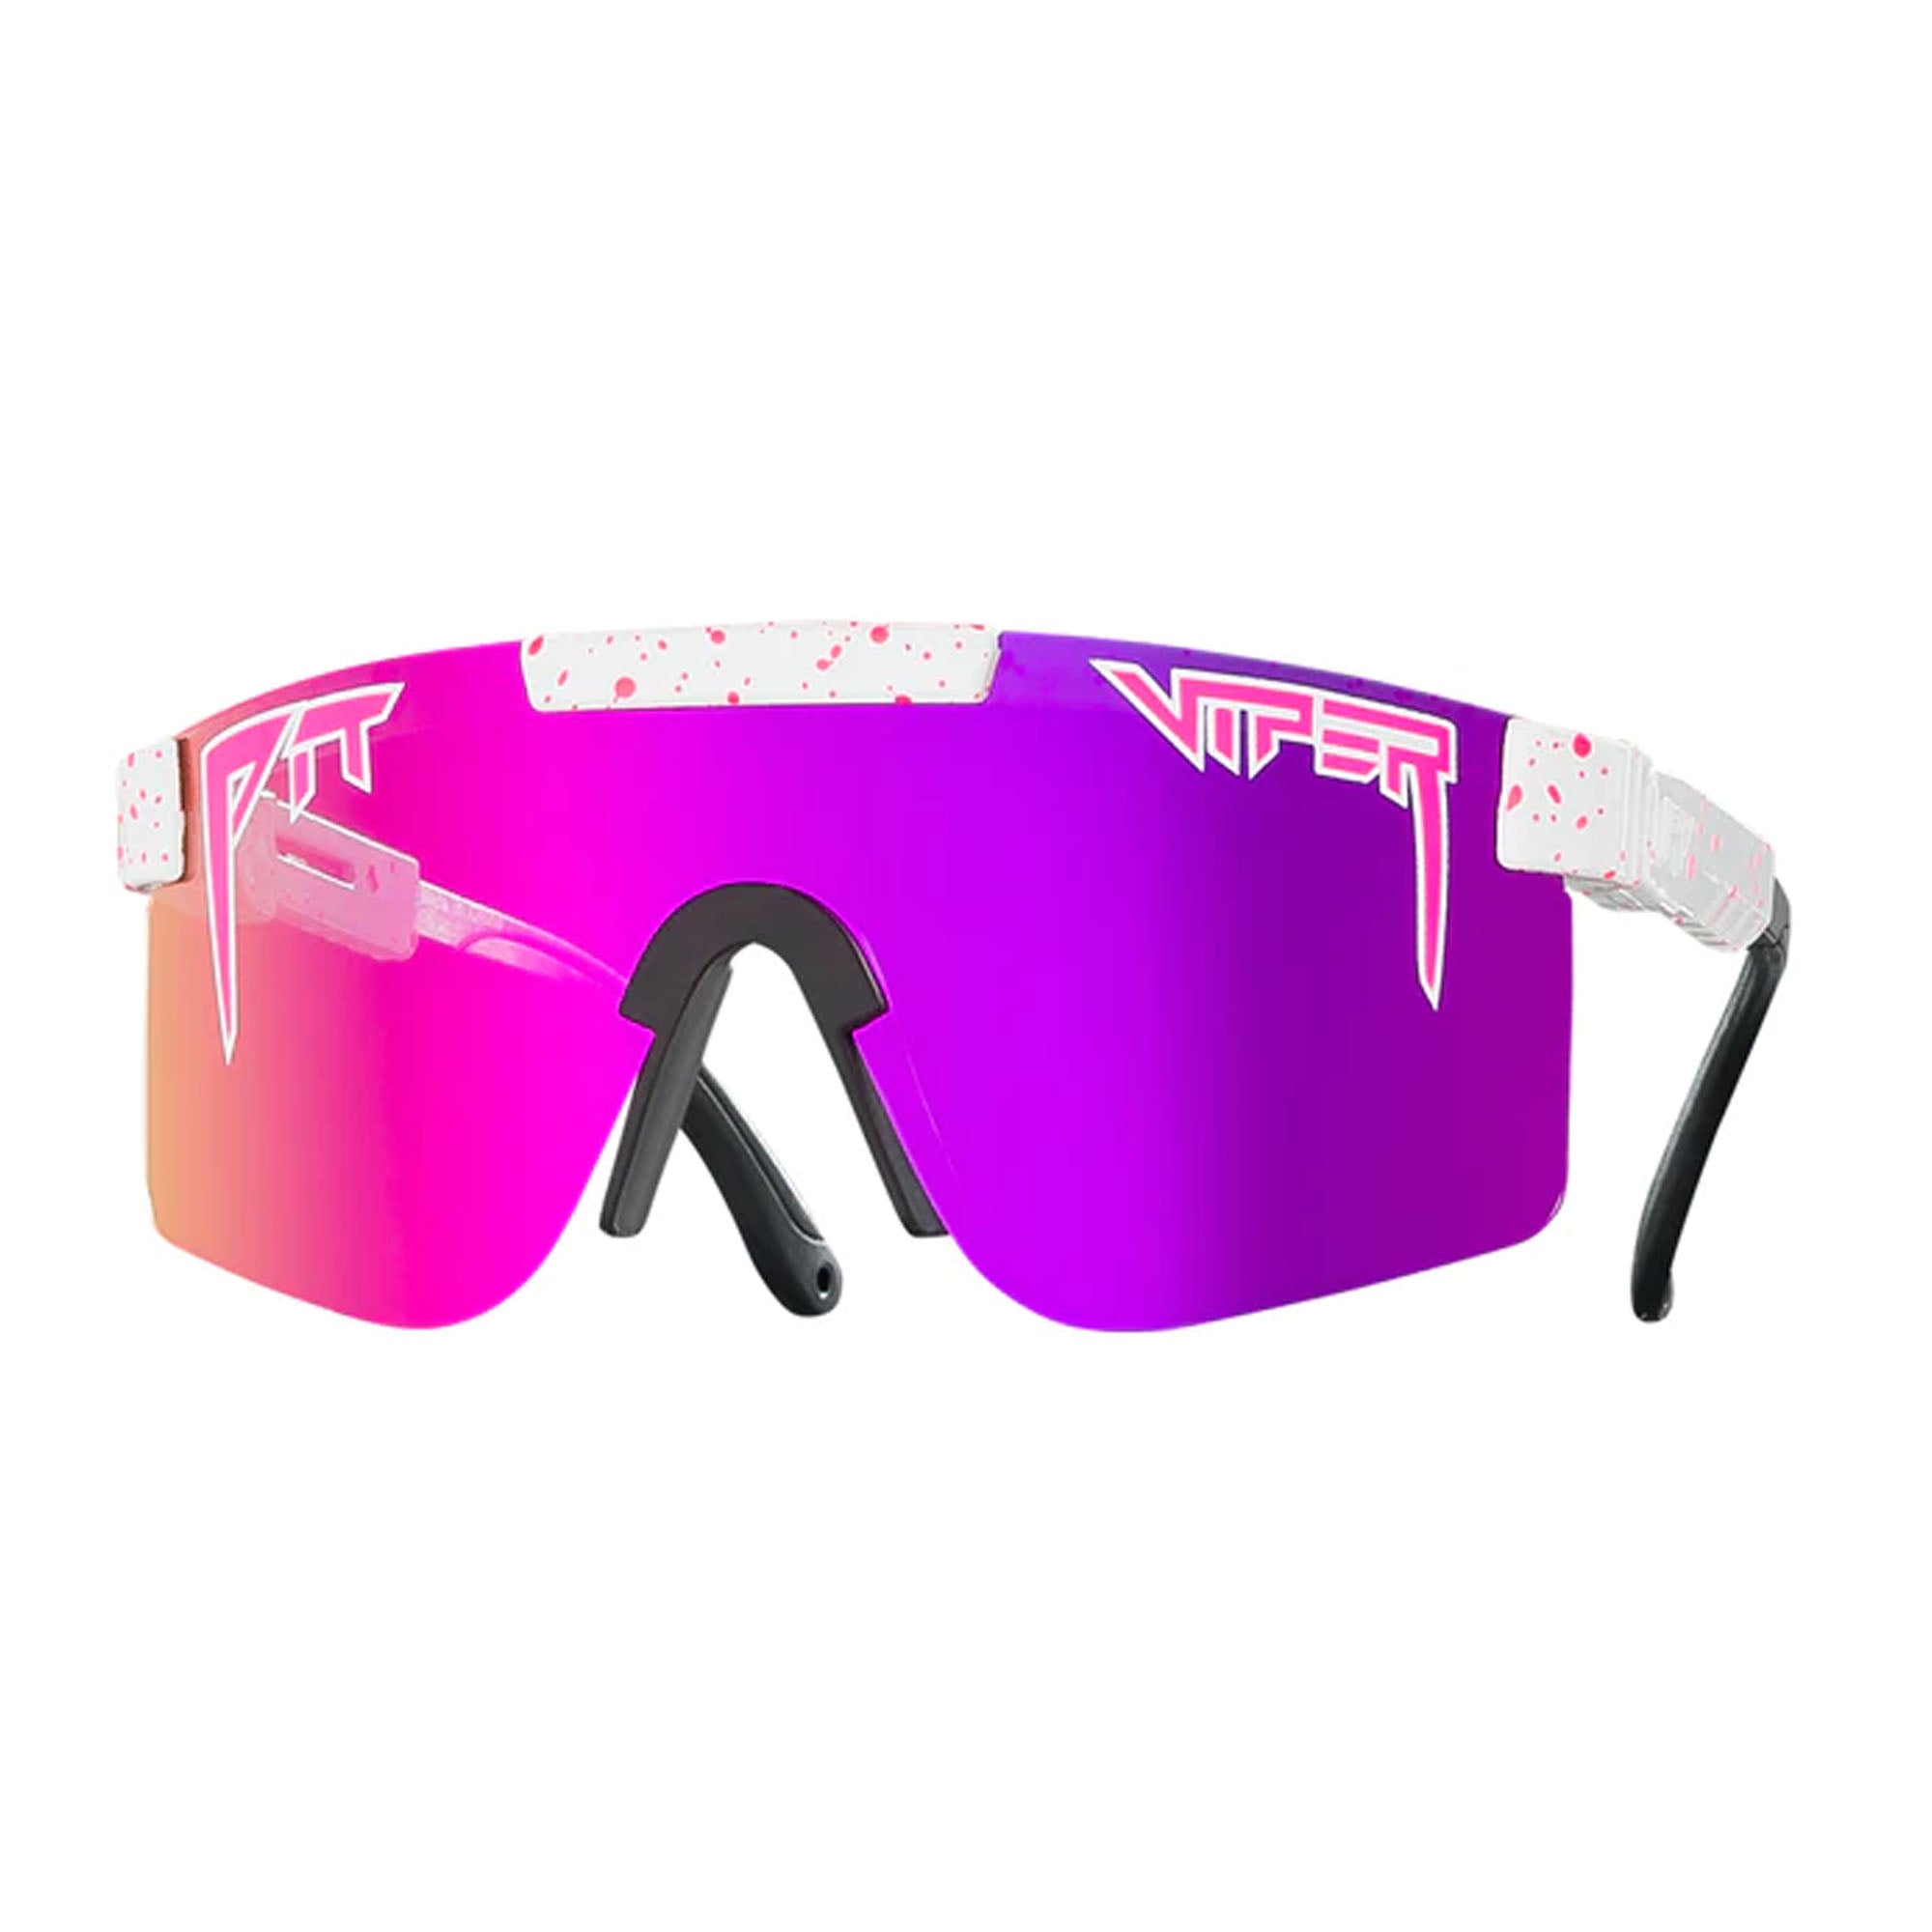 Pit Viper The LA Brights Polarized Men's Sunglasses